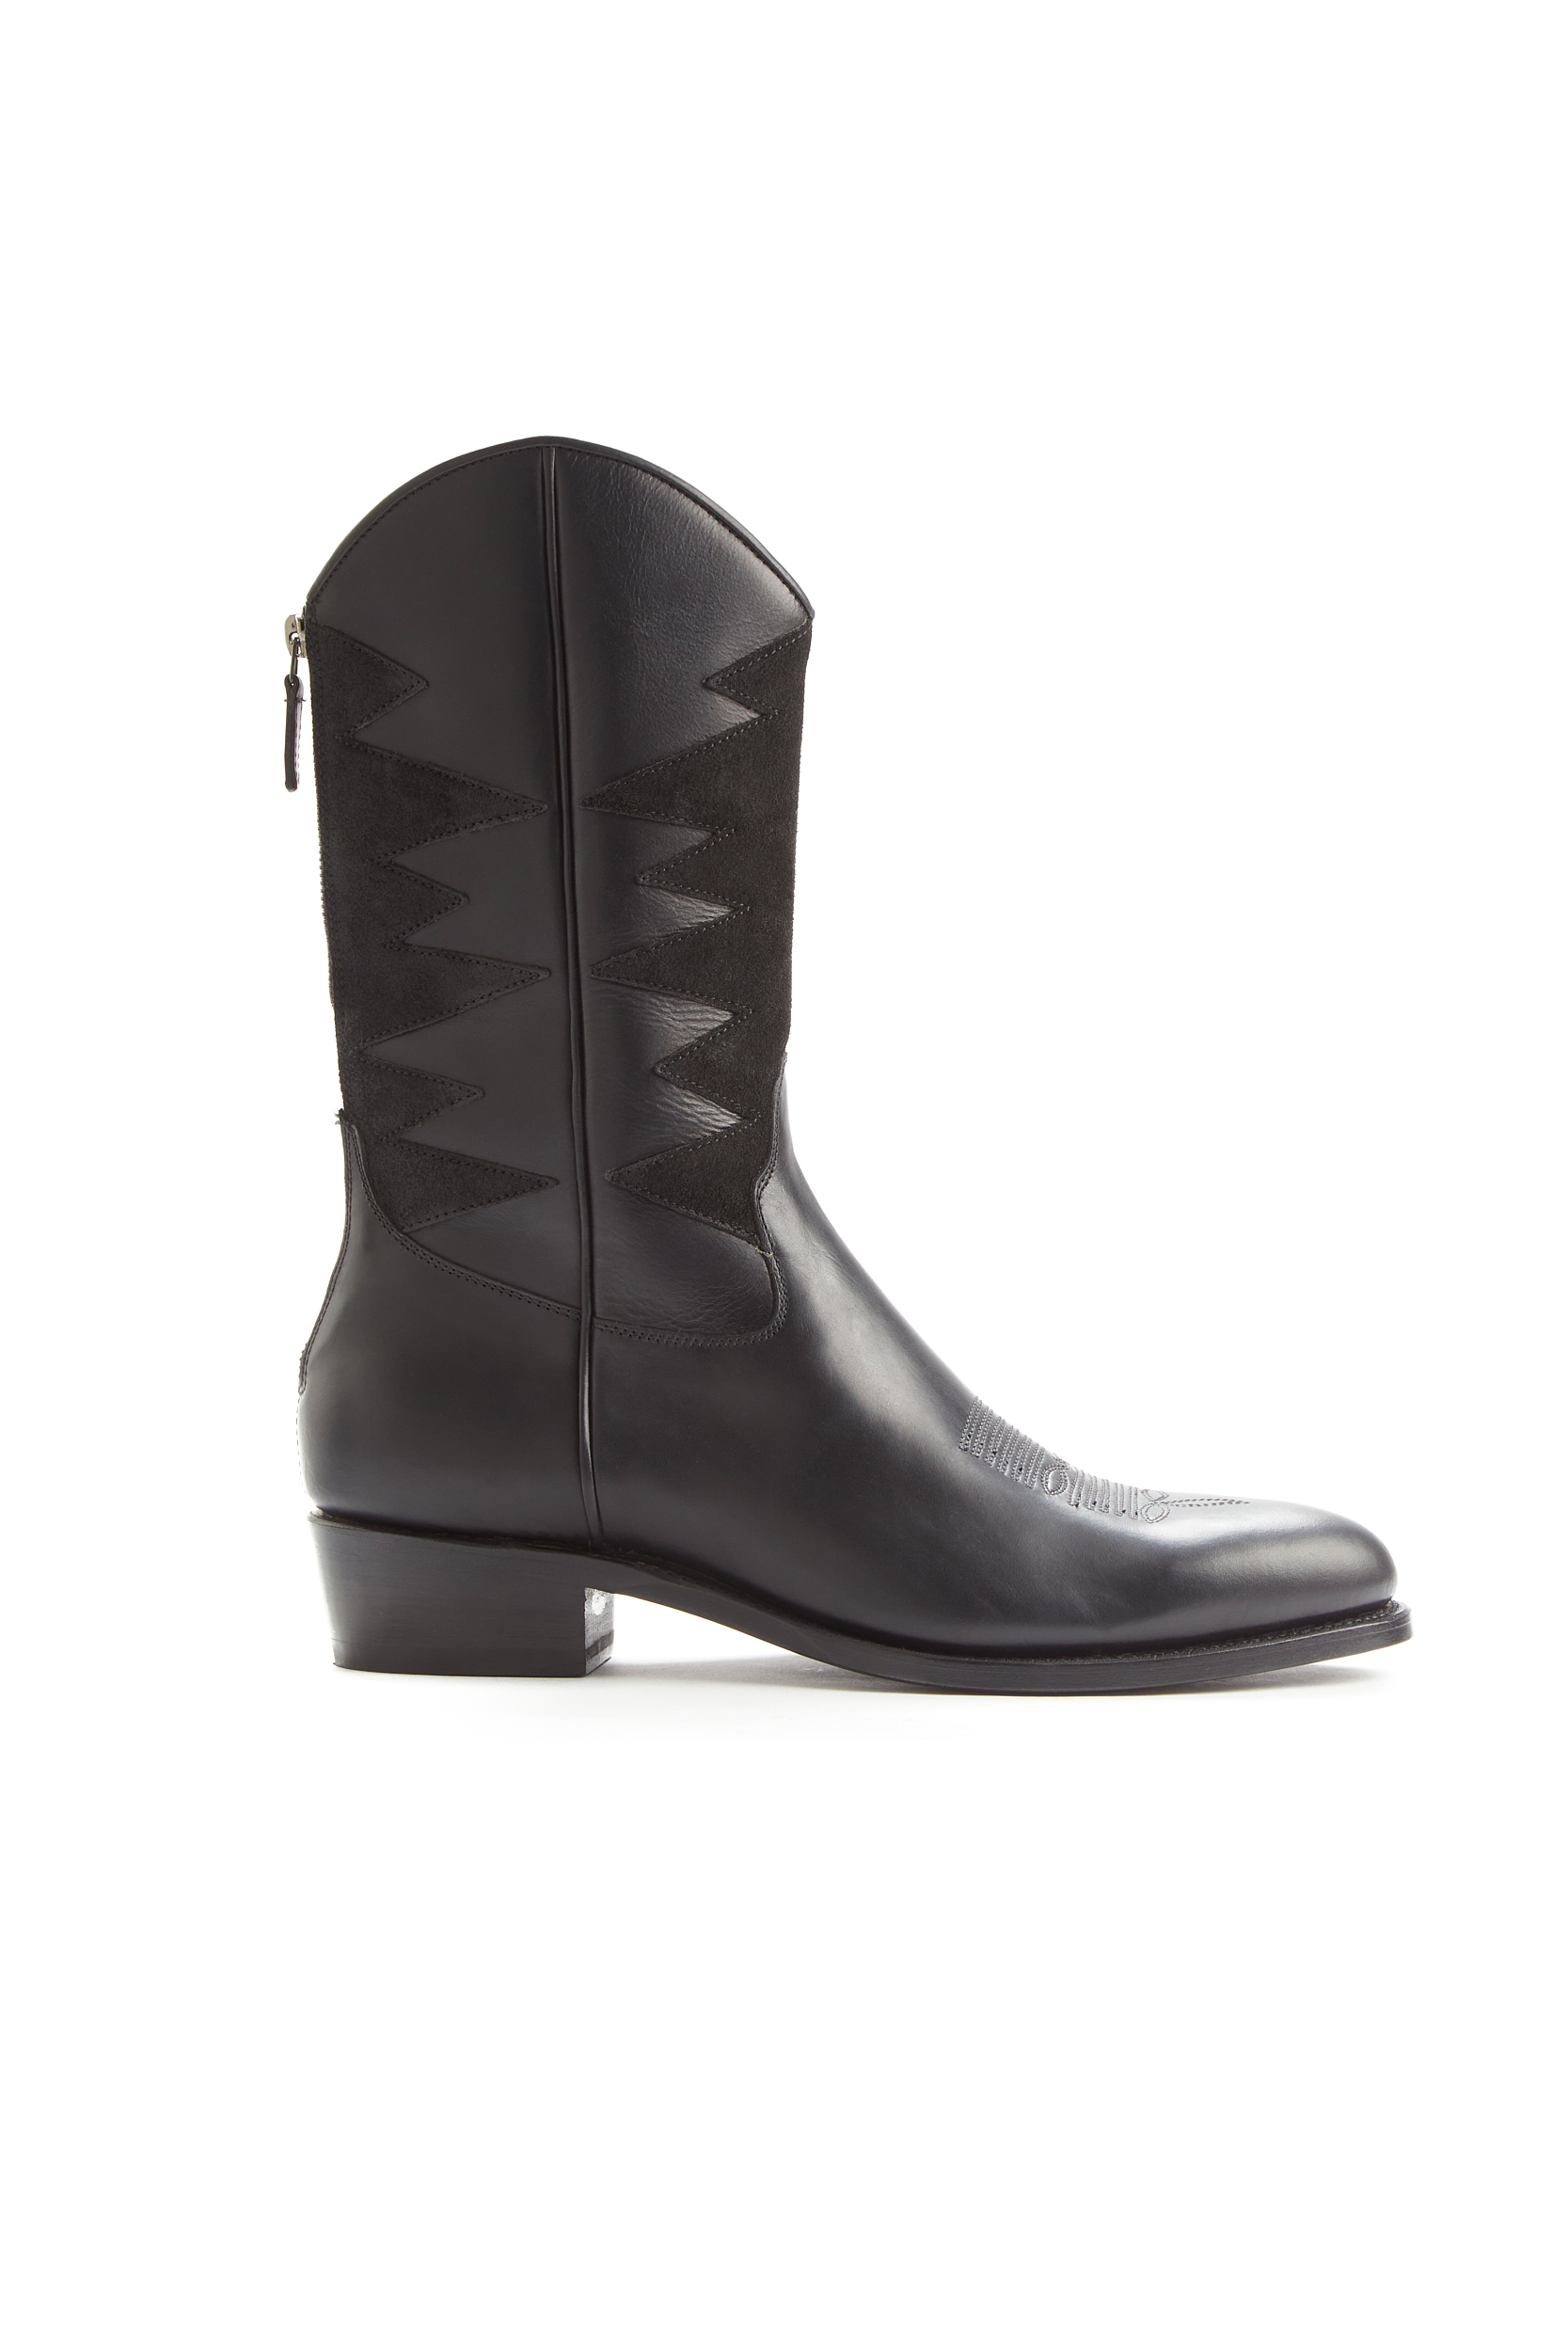 Cormac Black Calf Boots - 